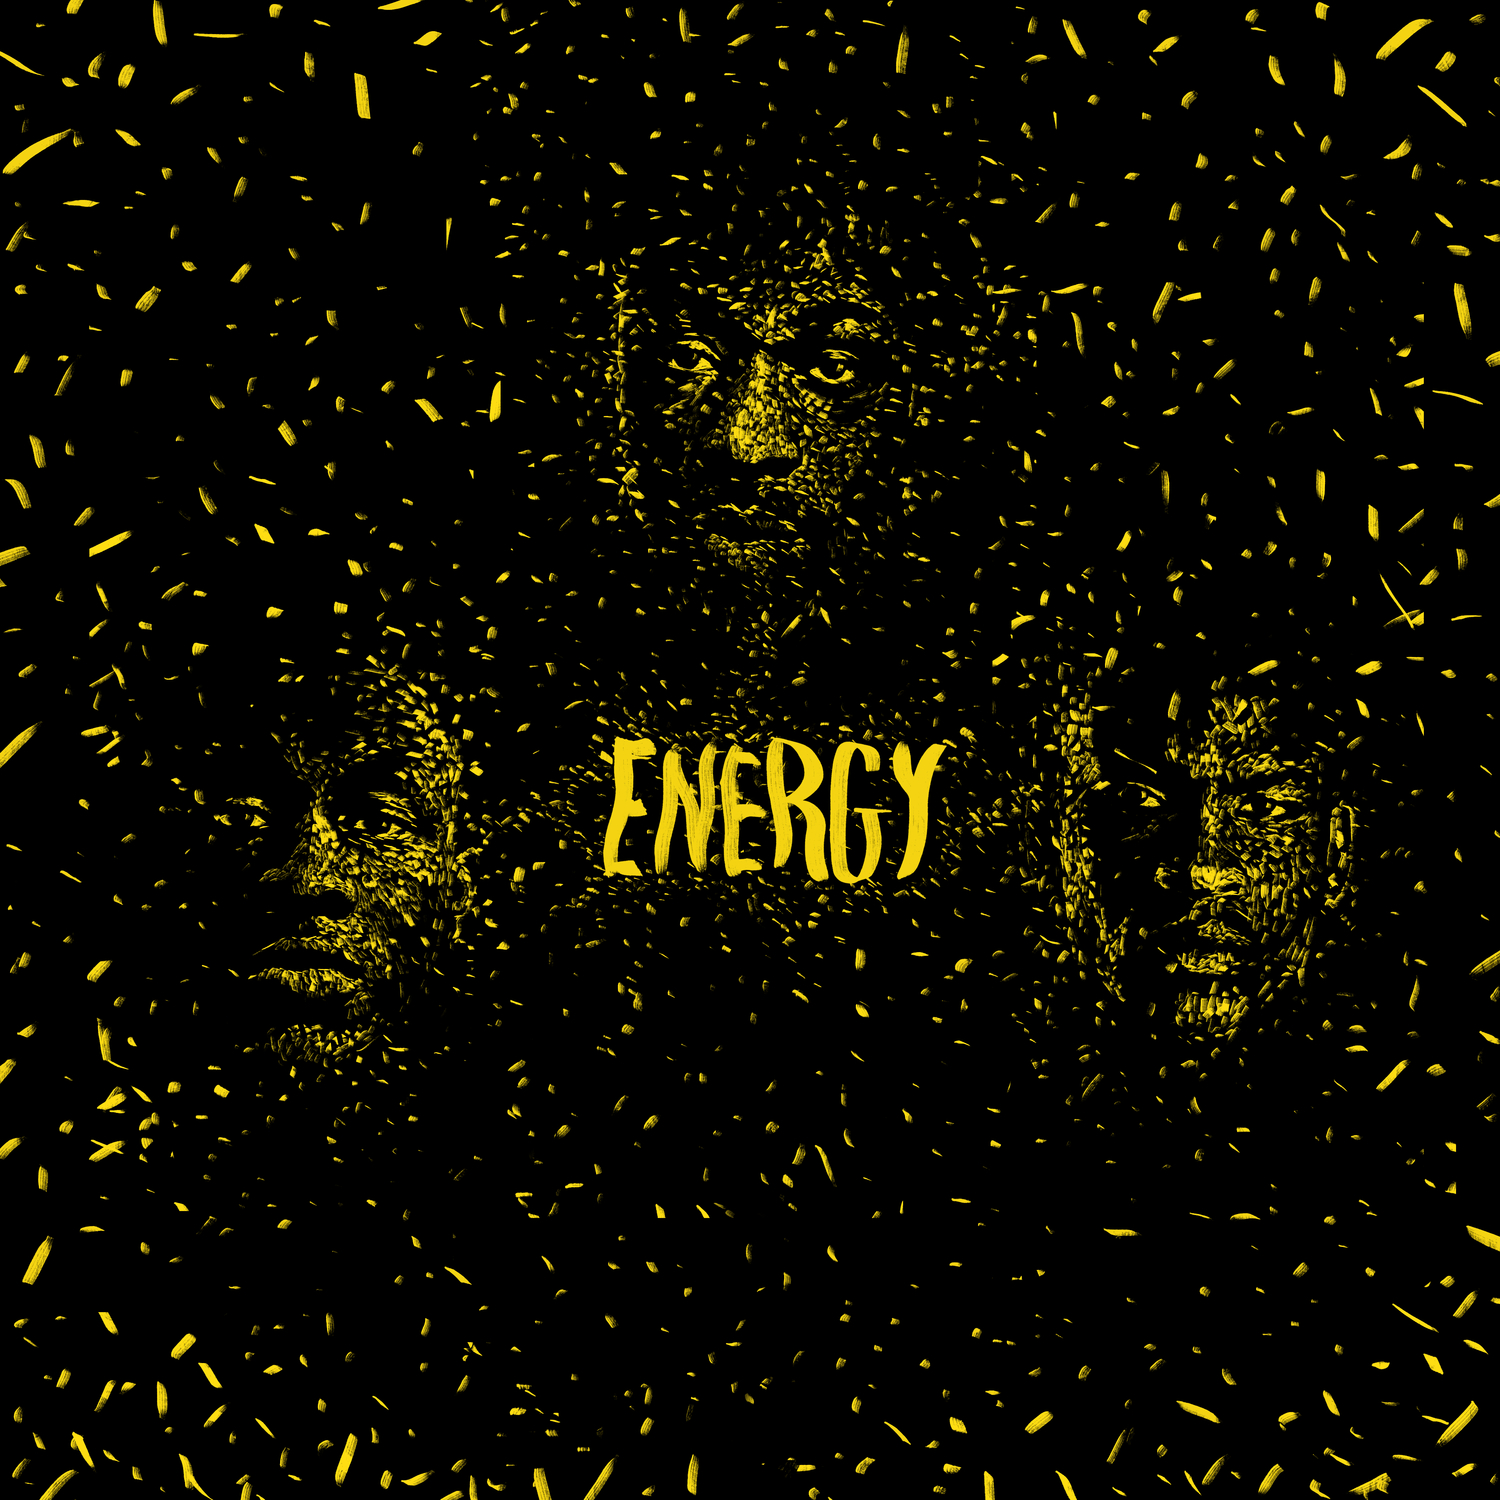 Ladata Energy (feat. Skepta & Stormzy)